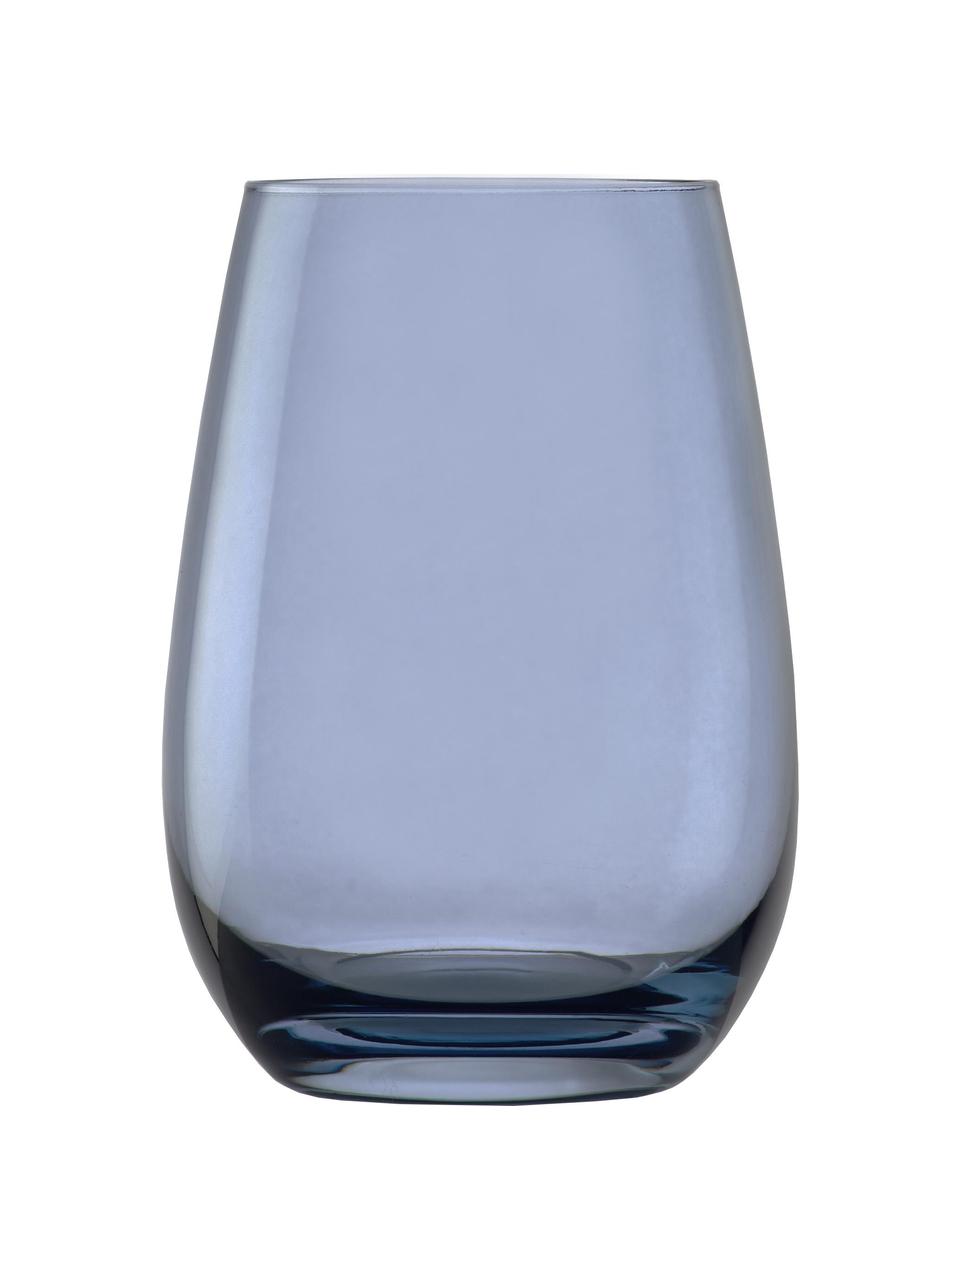 Waterglazen Elements in blauw, 6 stuks, Glas, Lichtblauw, Ø 9 x H 12 cm, 465 ml